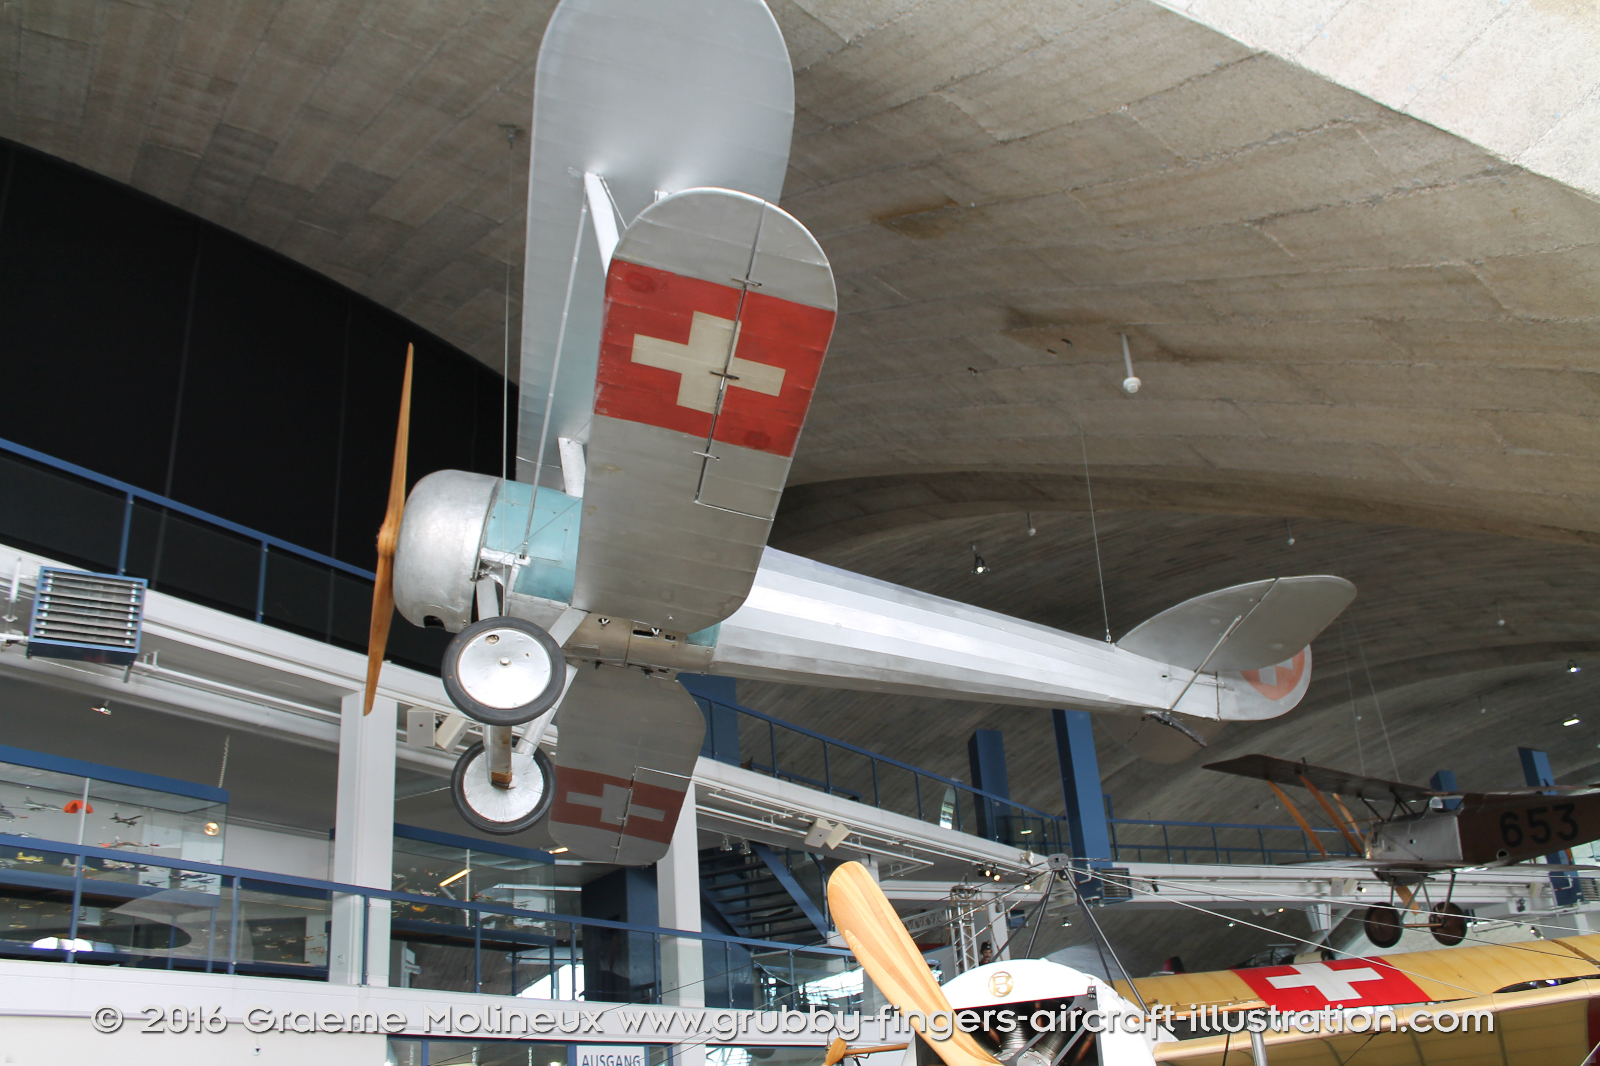 NIEUPORT_N-28_Swiss_Air_Force_Museum_2015_01_GrubbyFingers